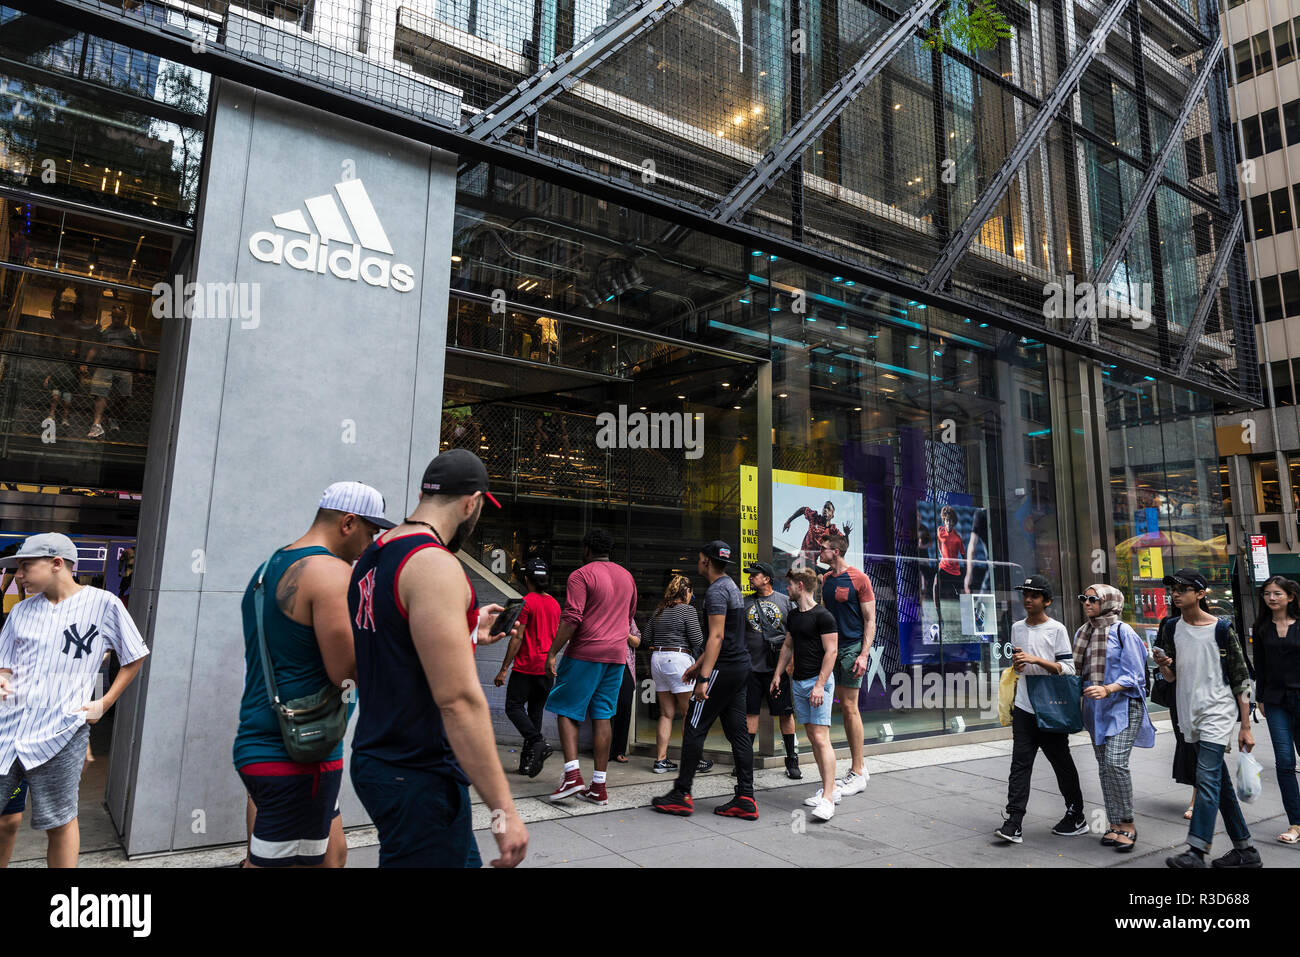 La Ciudad de Nueva York, Estados Unidos - 28 de julio de 2018: Adidas,  tienda de artículos deportivos, en la Quinta Avenida (5th Avenue) con  personas alrededor de Manhattan, en la Ciudad